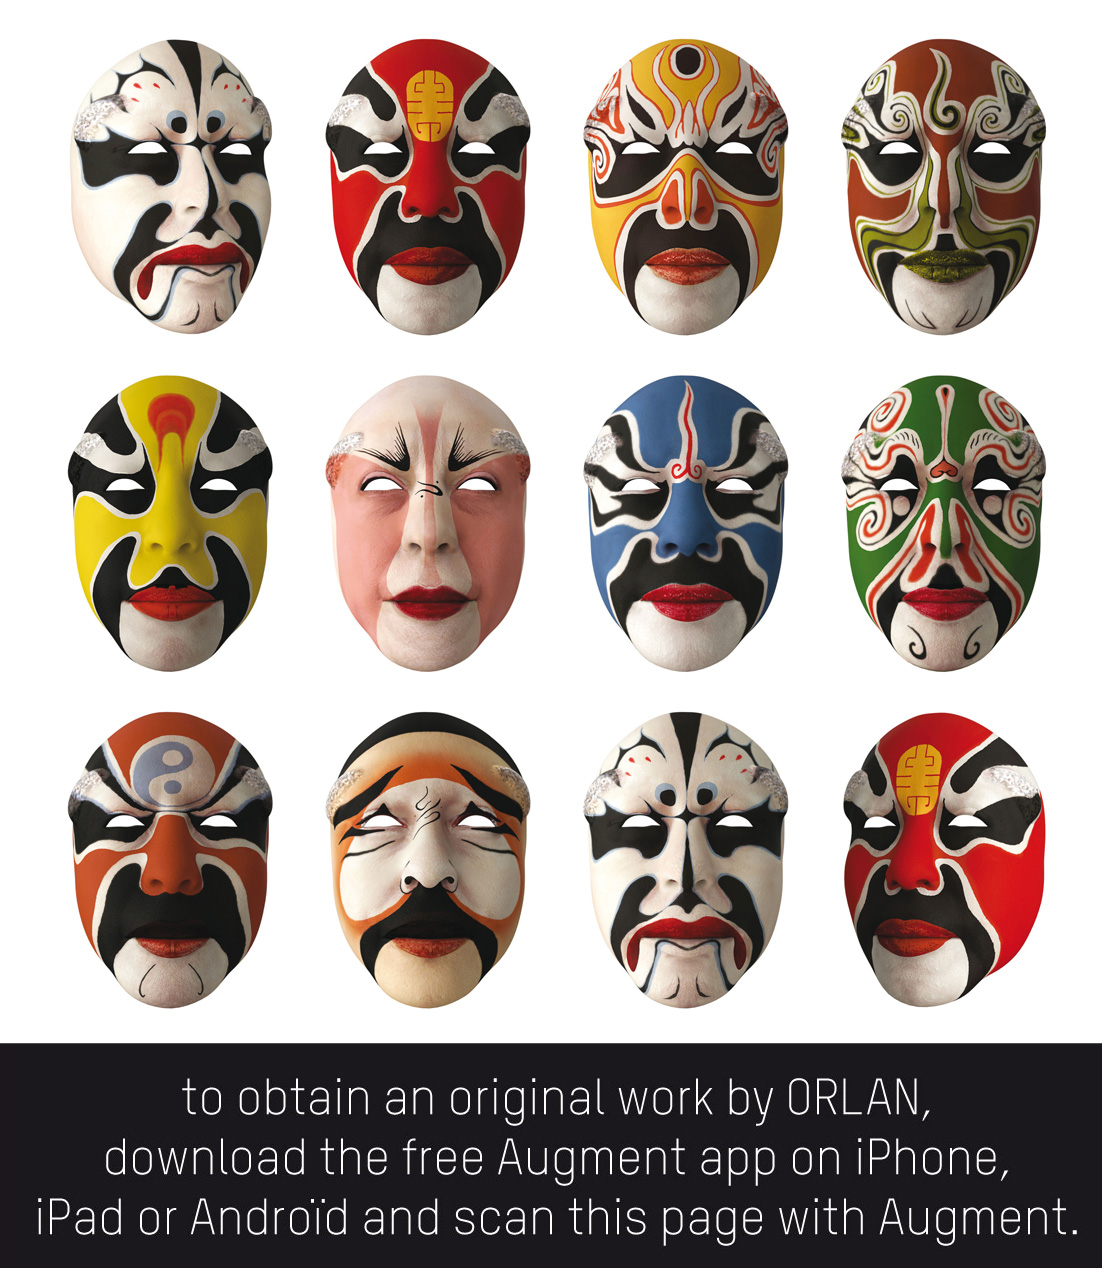  ORLAN - Masques, Pekin Opera facing designs & ralit augmente